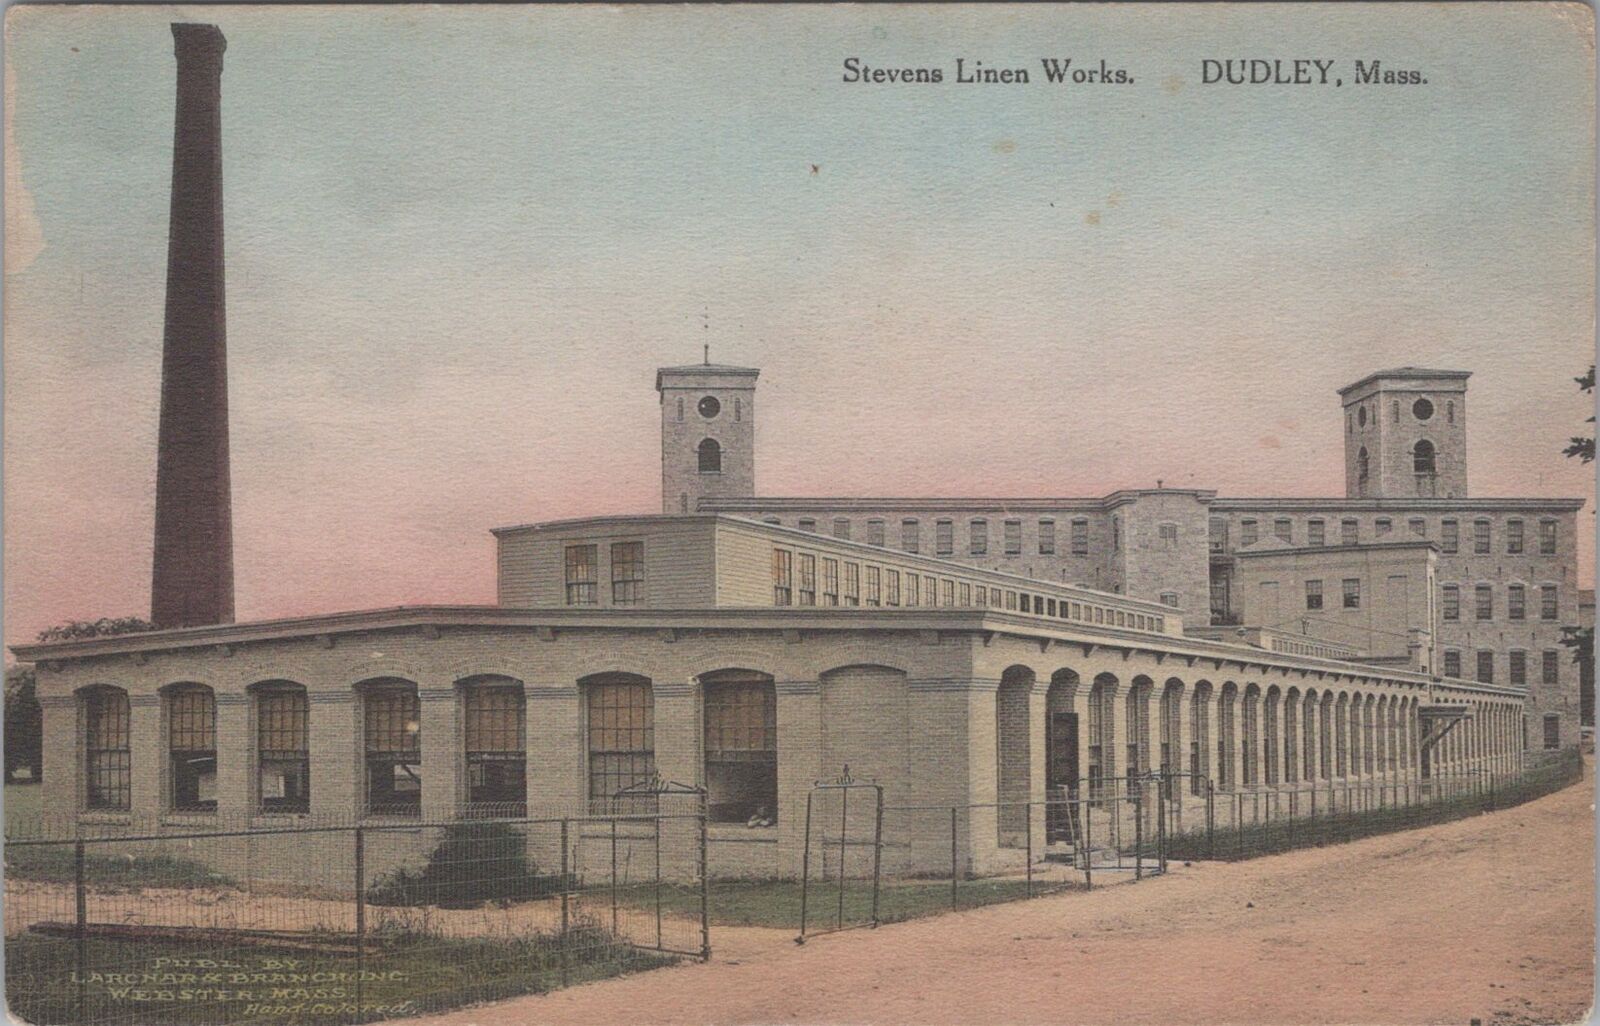 Stevens Linen Works, Dudley Massachusetts Albertype c1920s? Postcard